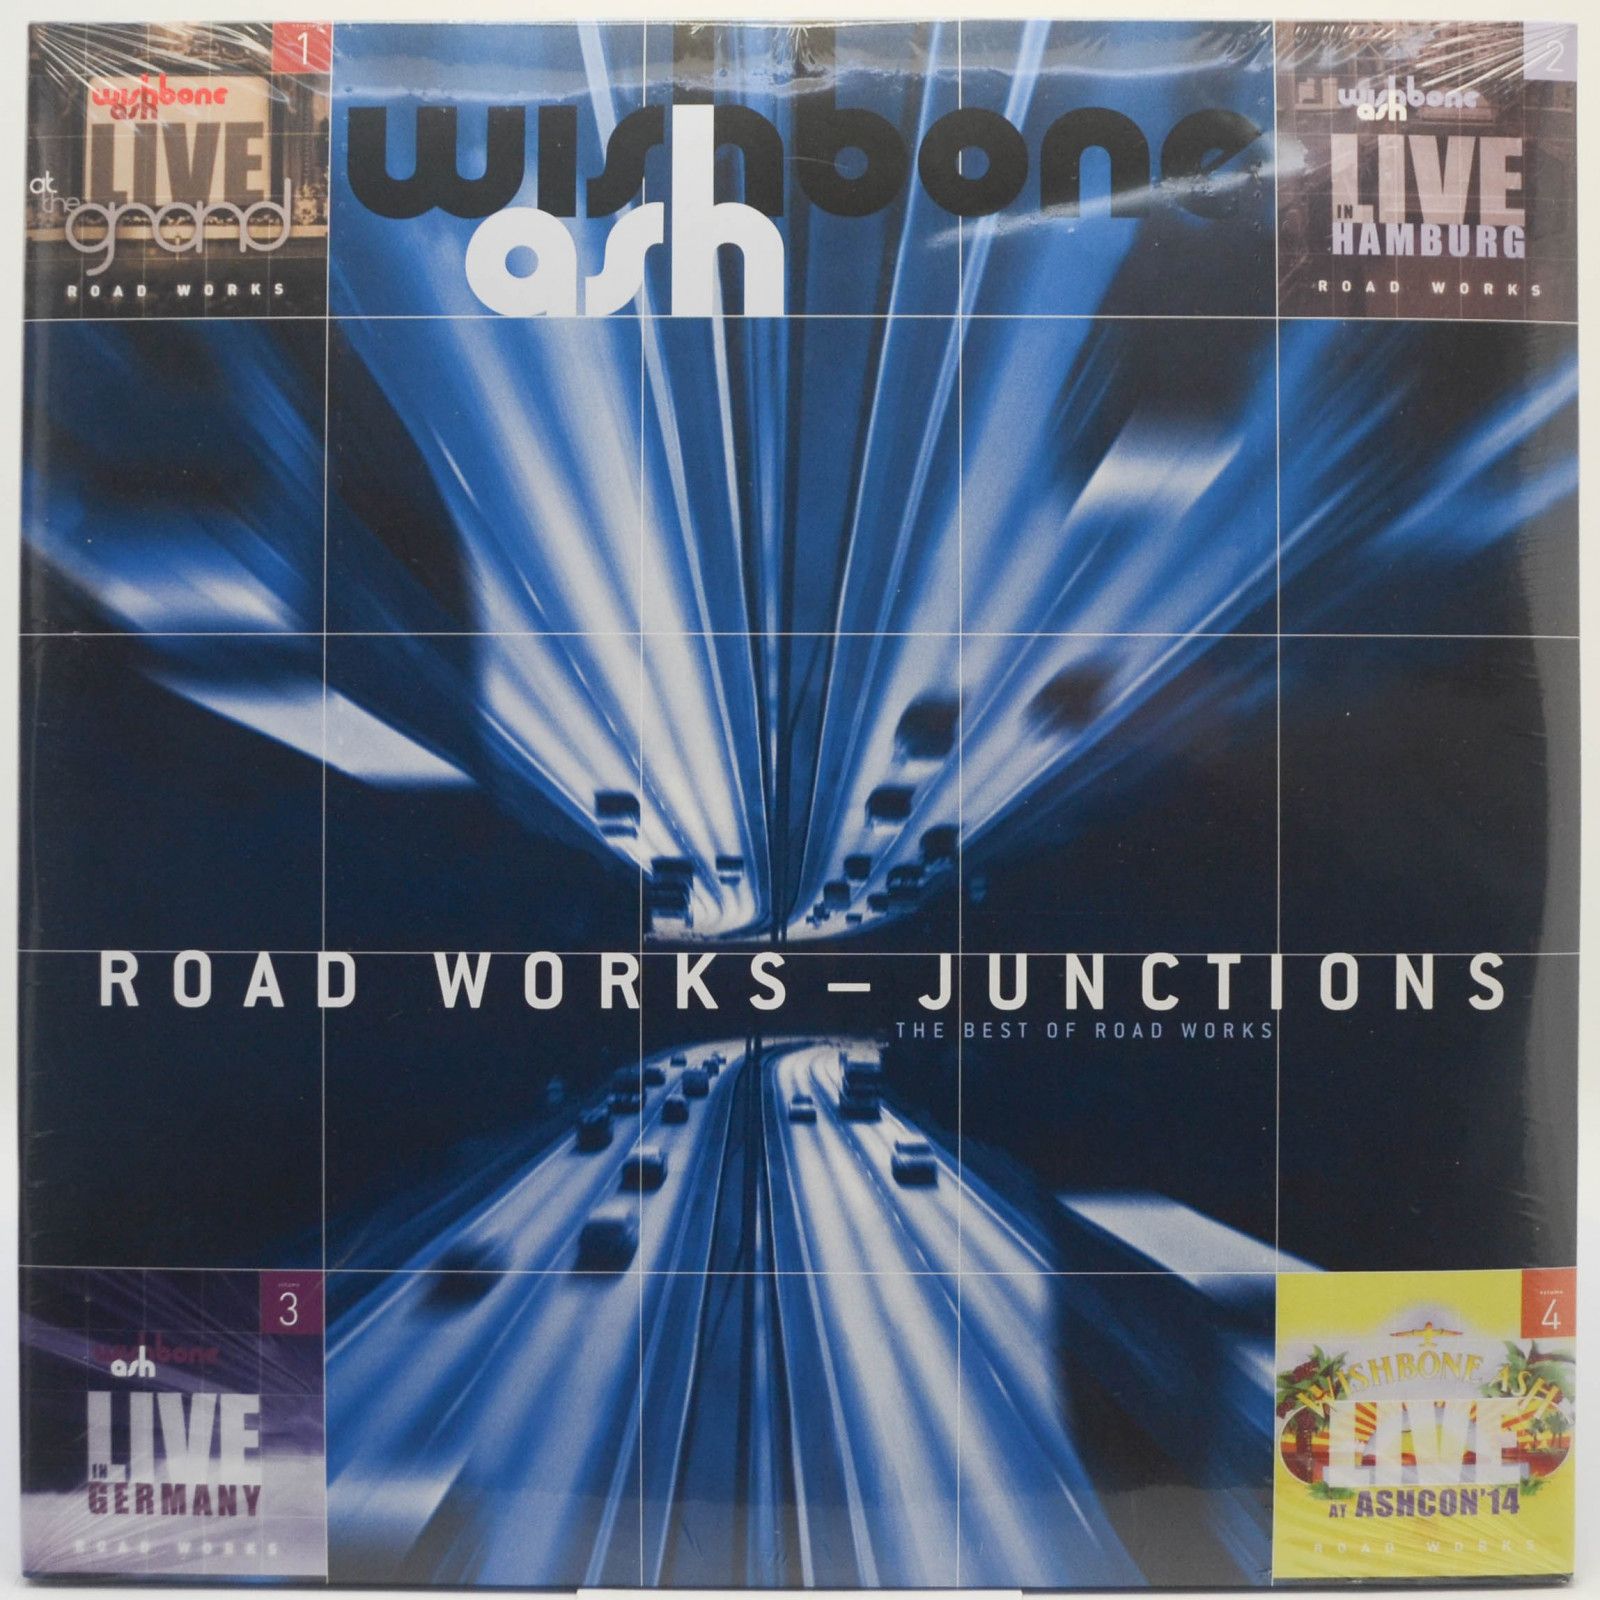 Wishbone Ash — Road Works - Junctions The Best Of Road Works (2LP, UK), 2018